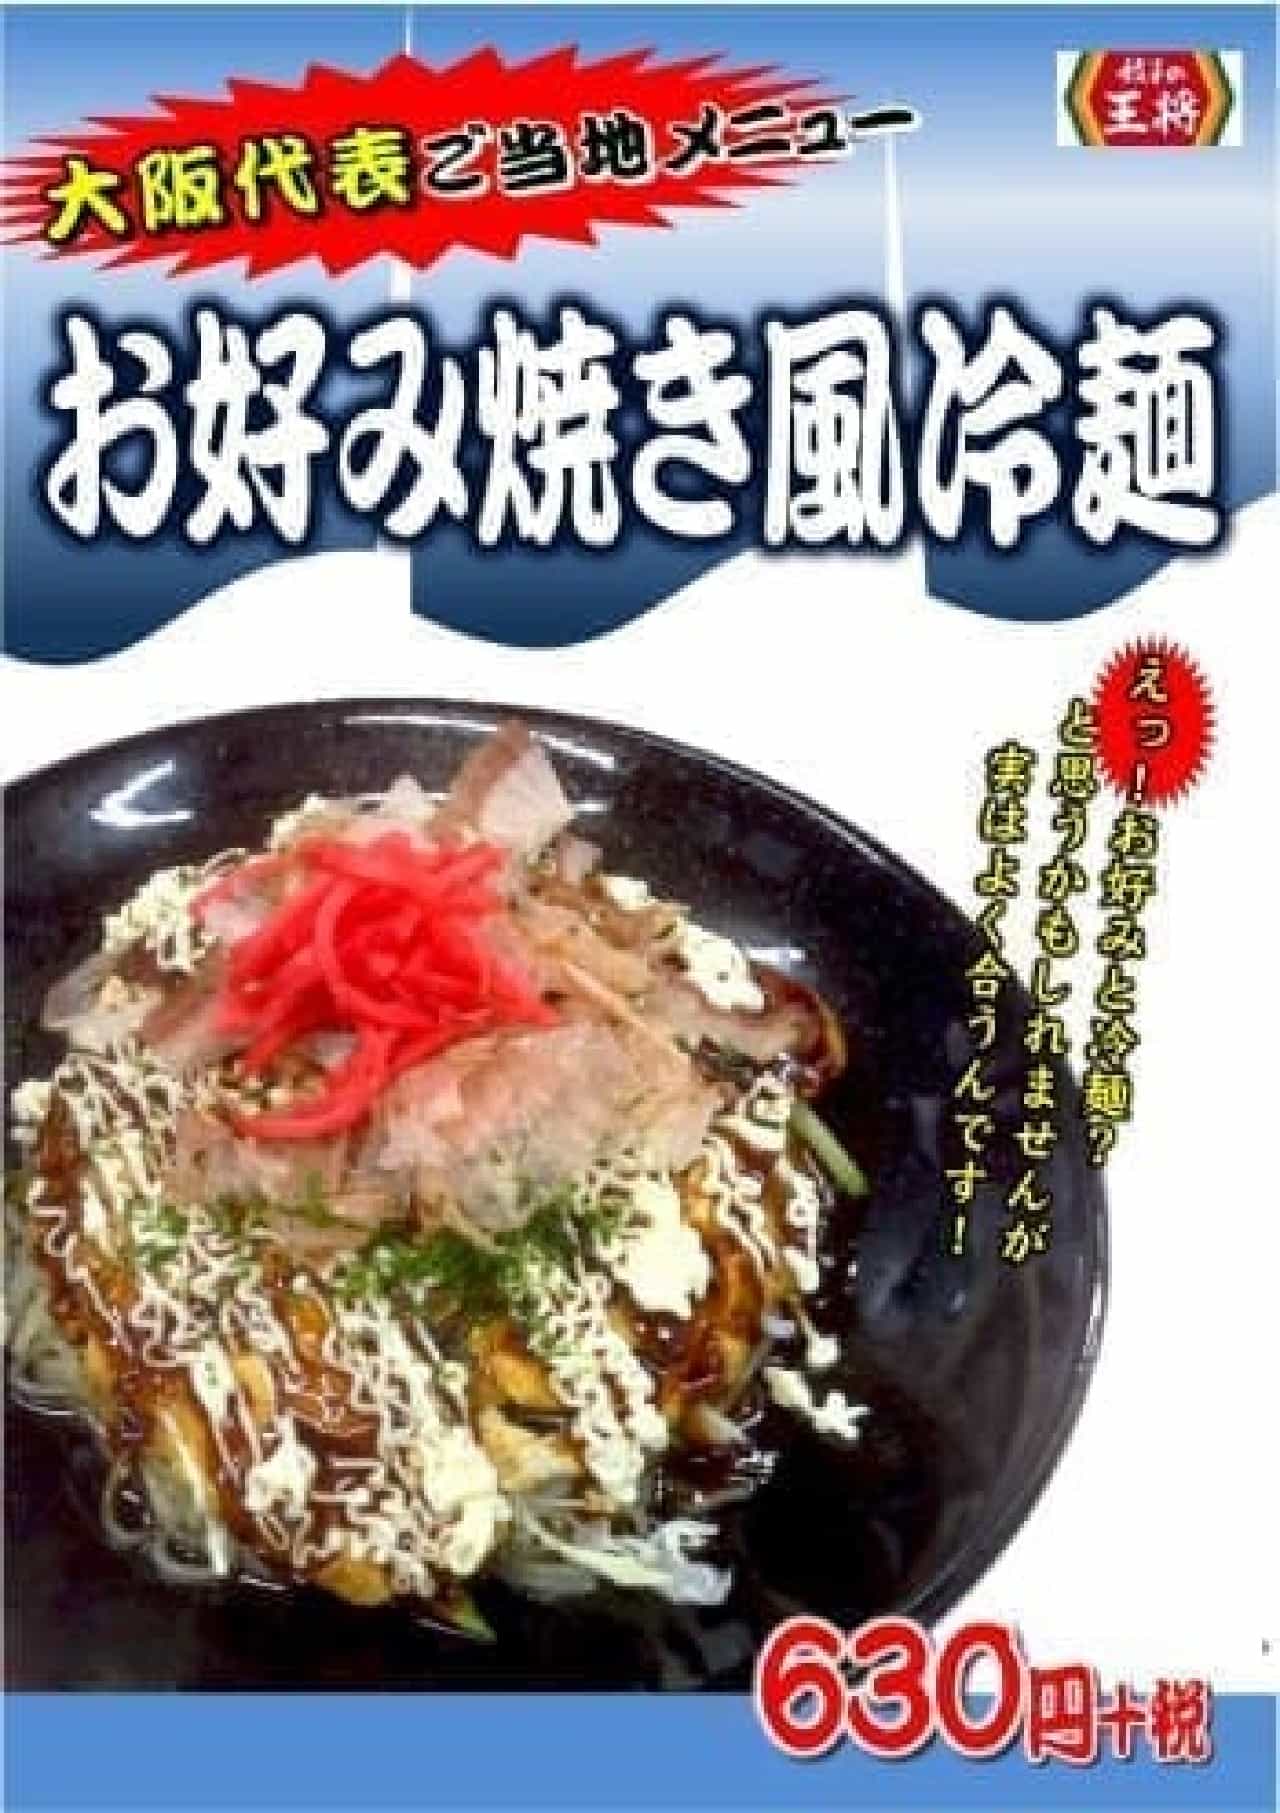 大阪代表は“お好み焼き”と冷麺のコラボメニュー